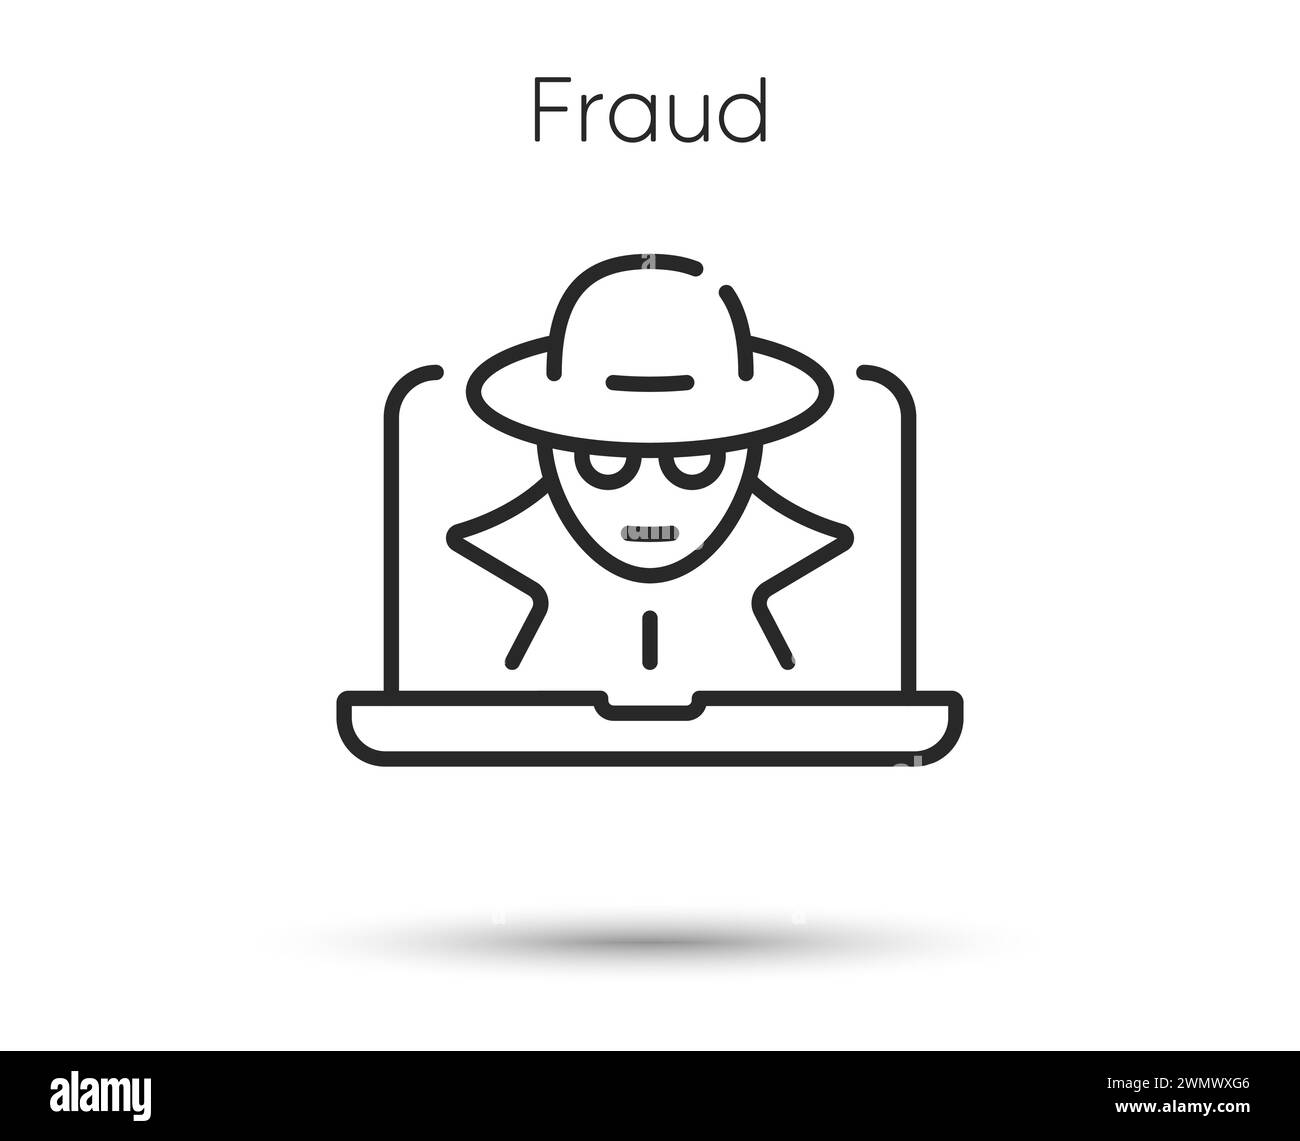 Fraud line icon. Spy, thief or hacker sign. Cyber hack symbol. Vector Stock Vector